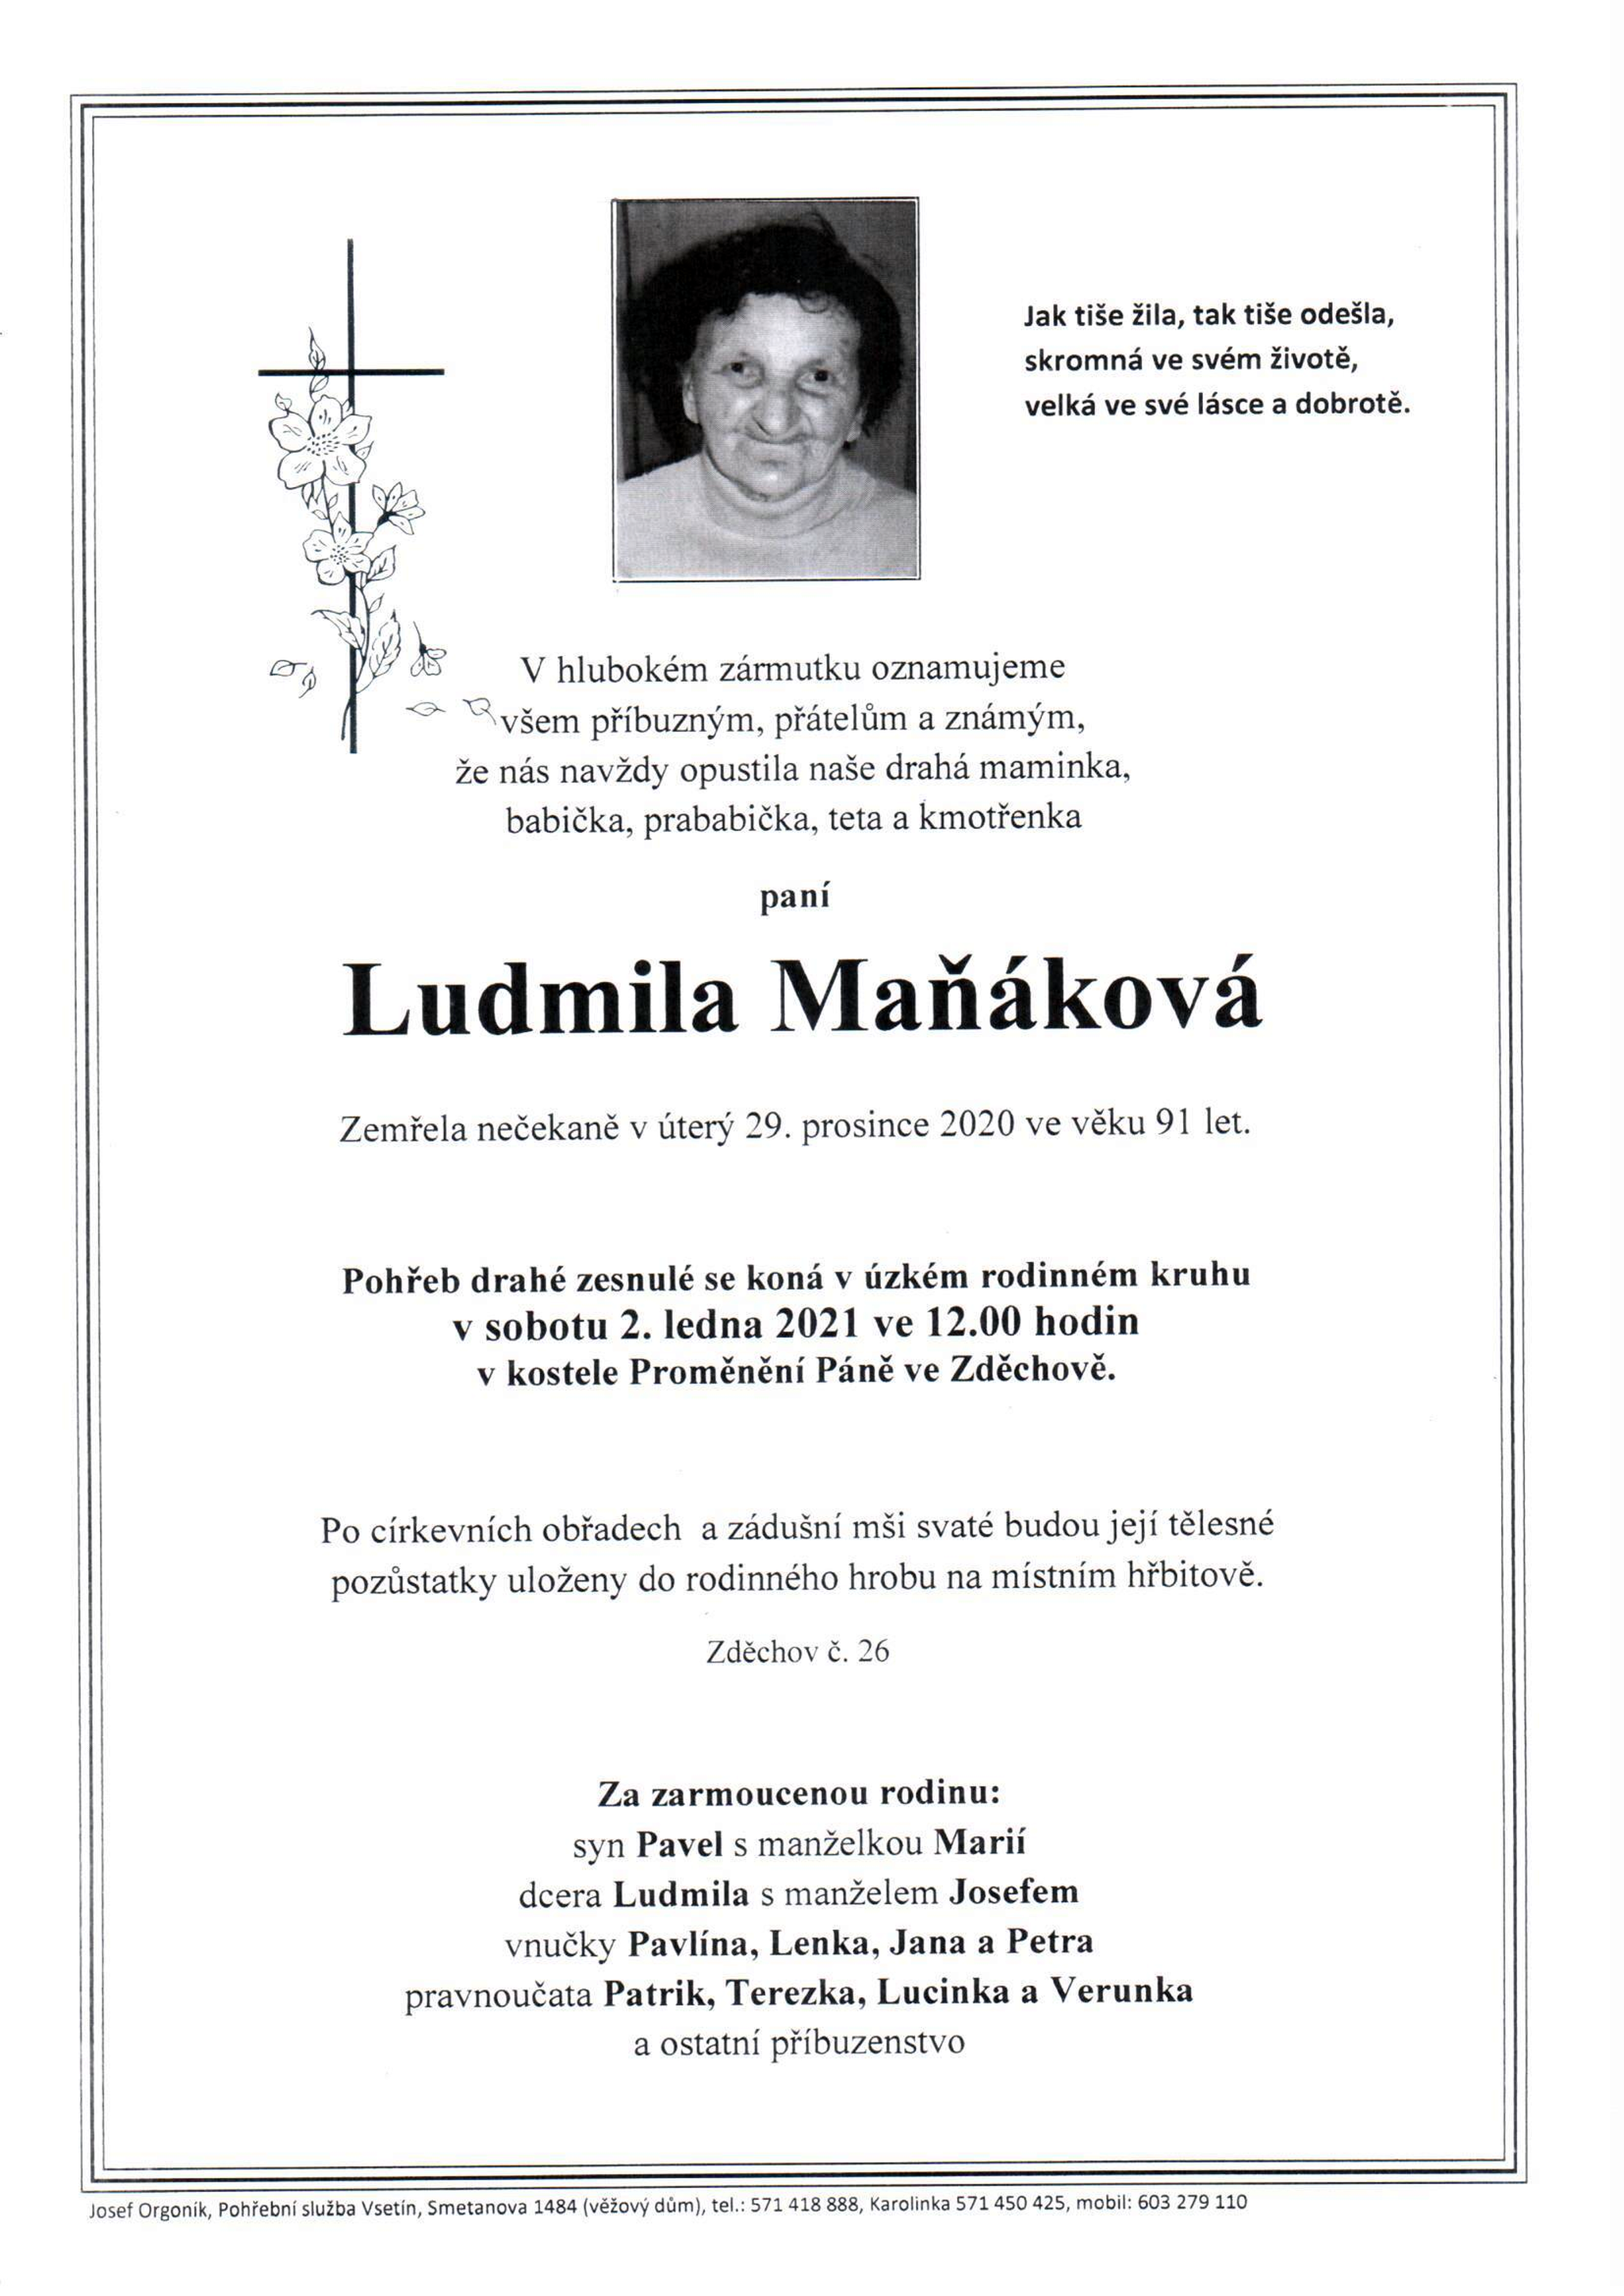 Ludmila Maňáková